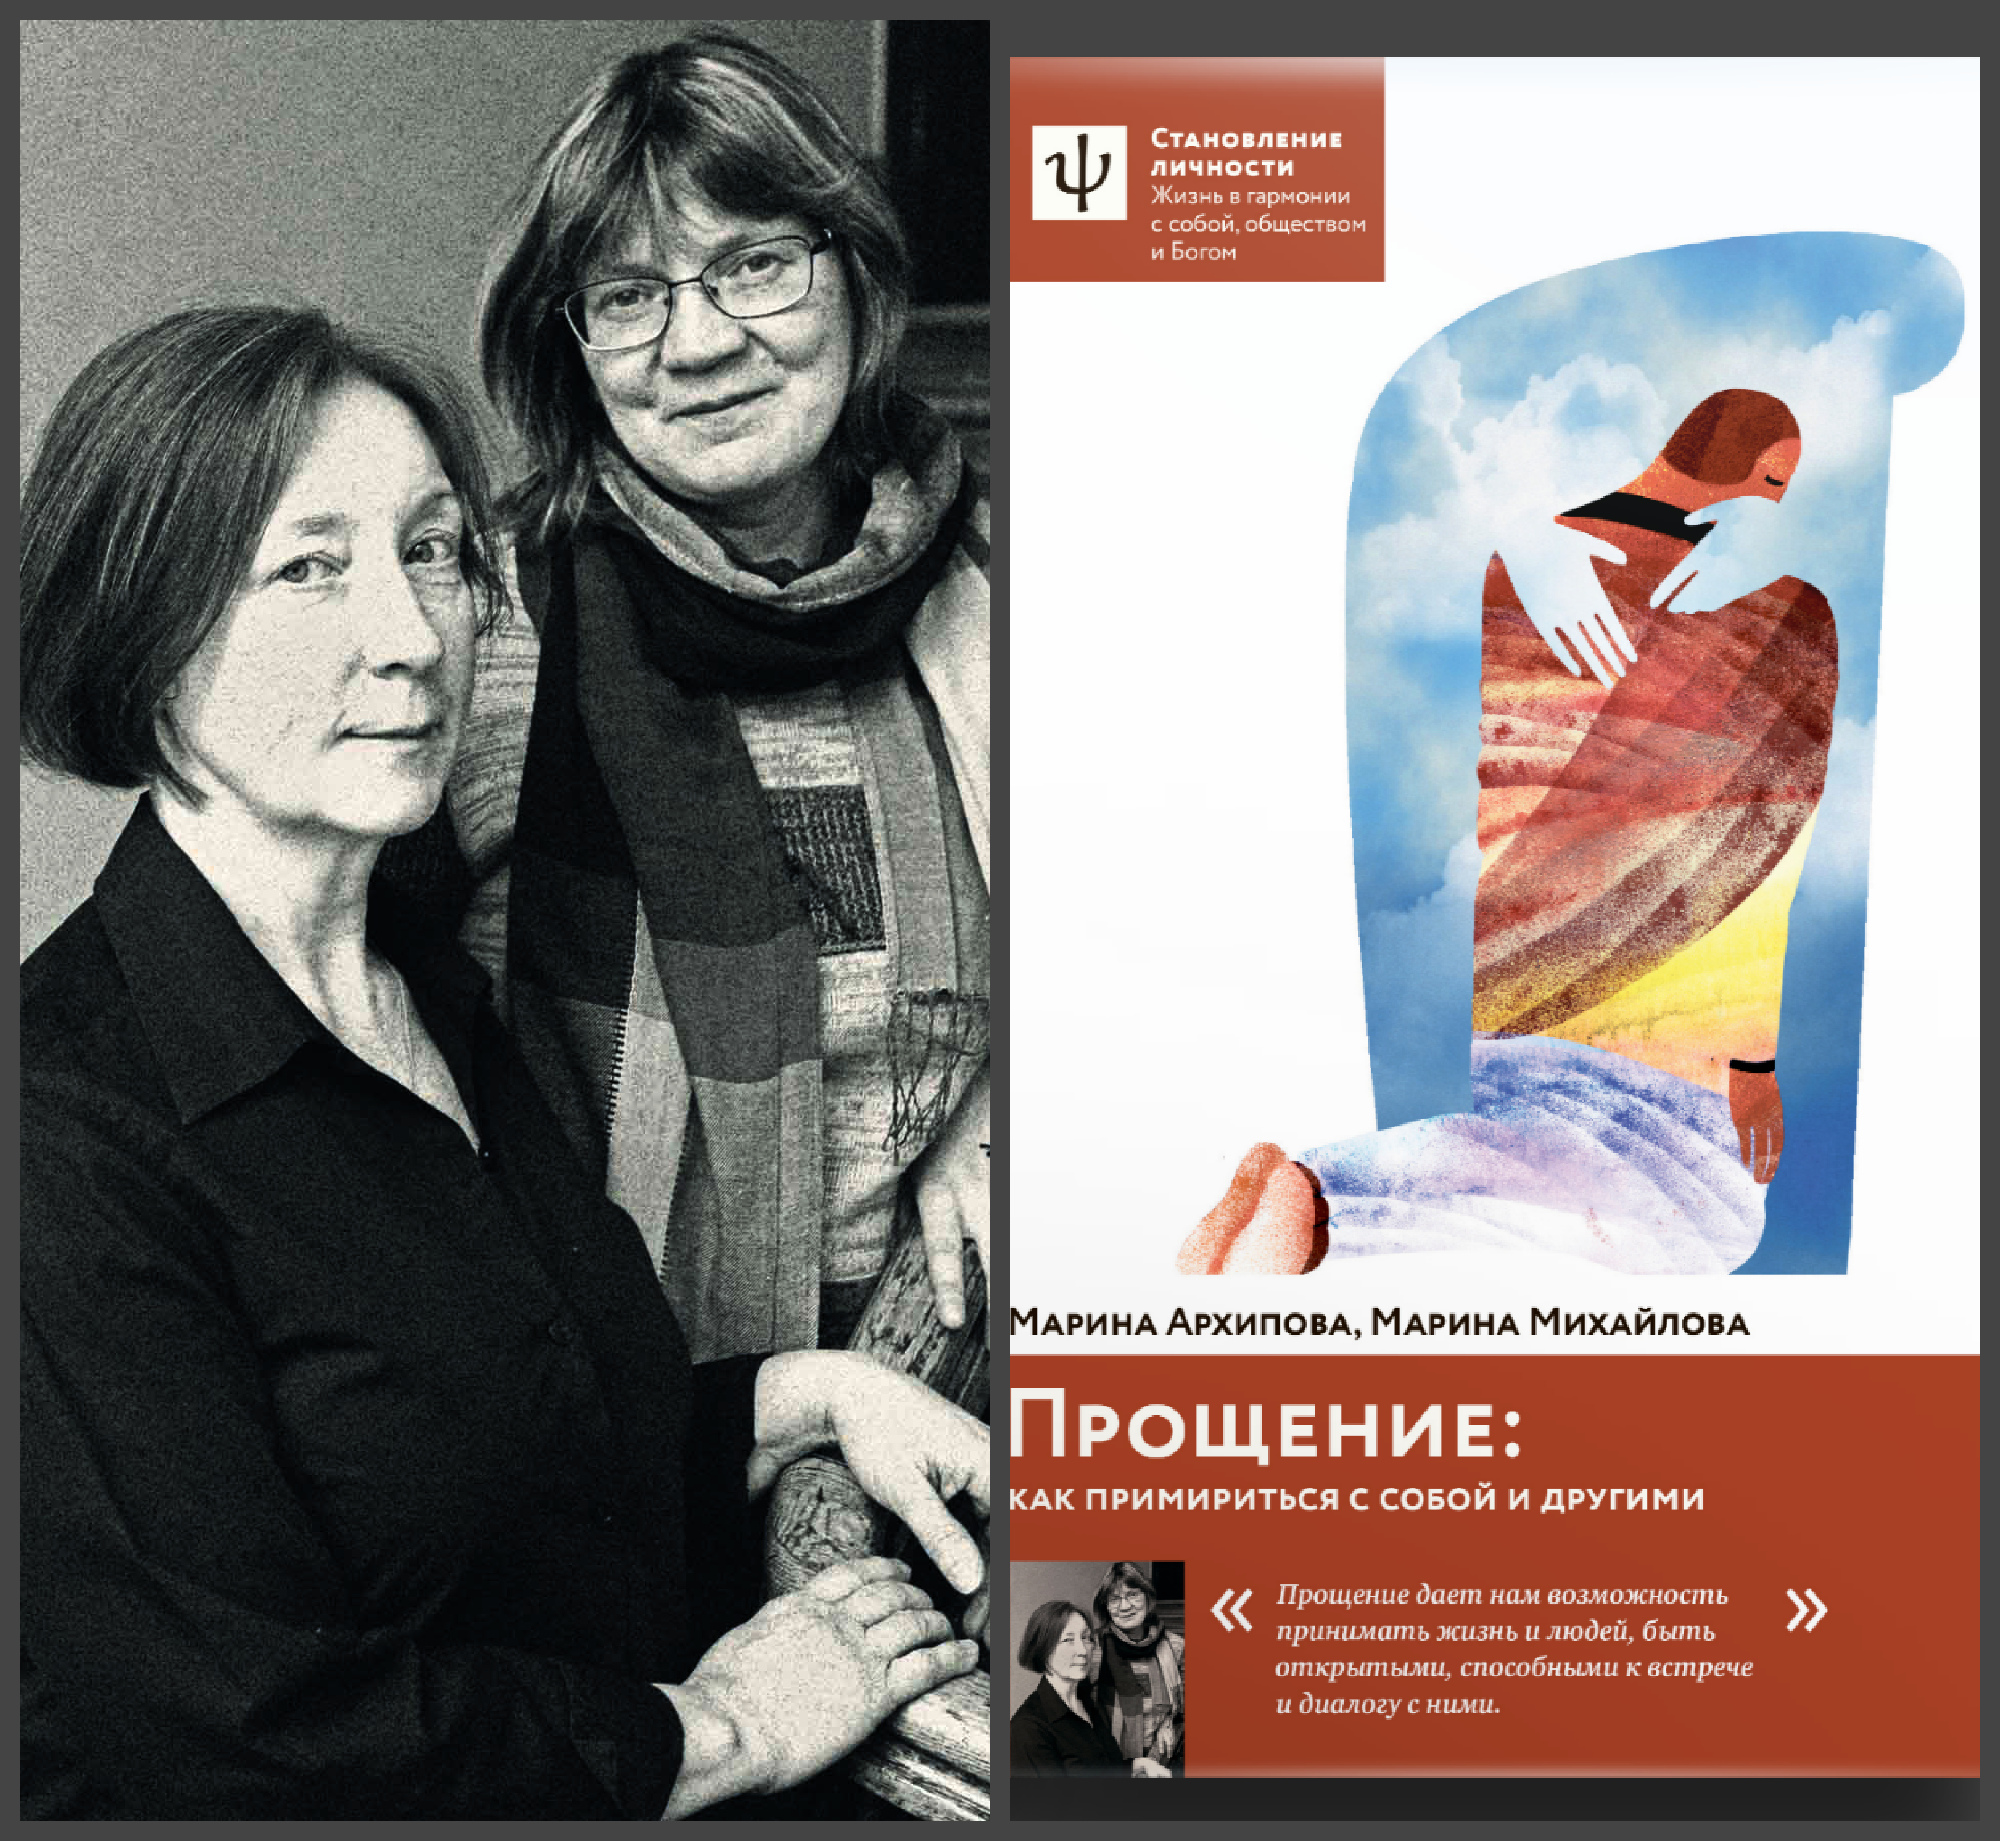 22 октября — Презентация книги «Прощение. Как примириться с собой и другими» Марины Михайловой и Марины Архиповой